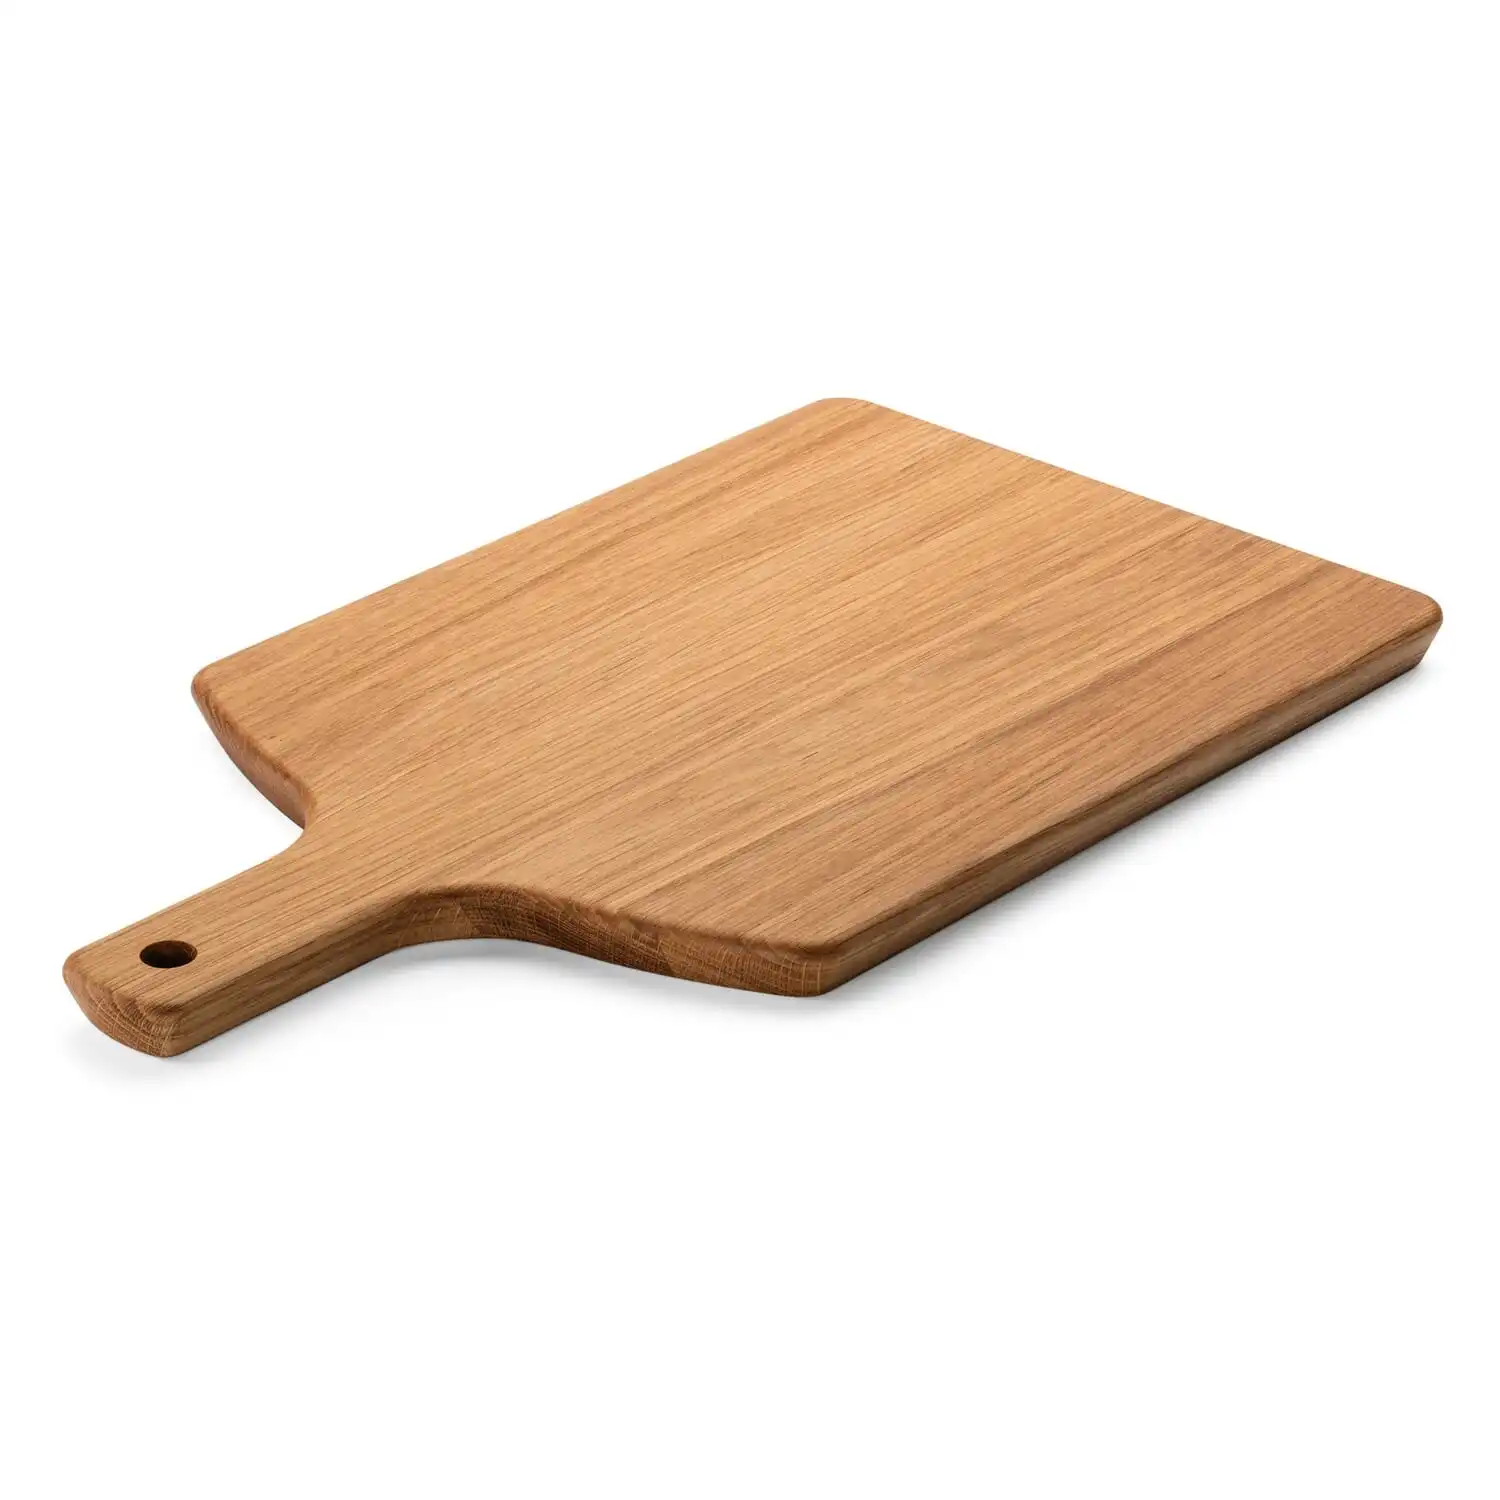 Premier Housewares papan pemotong, talenan kayu bambu kecil alami 18x35x2 cm